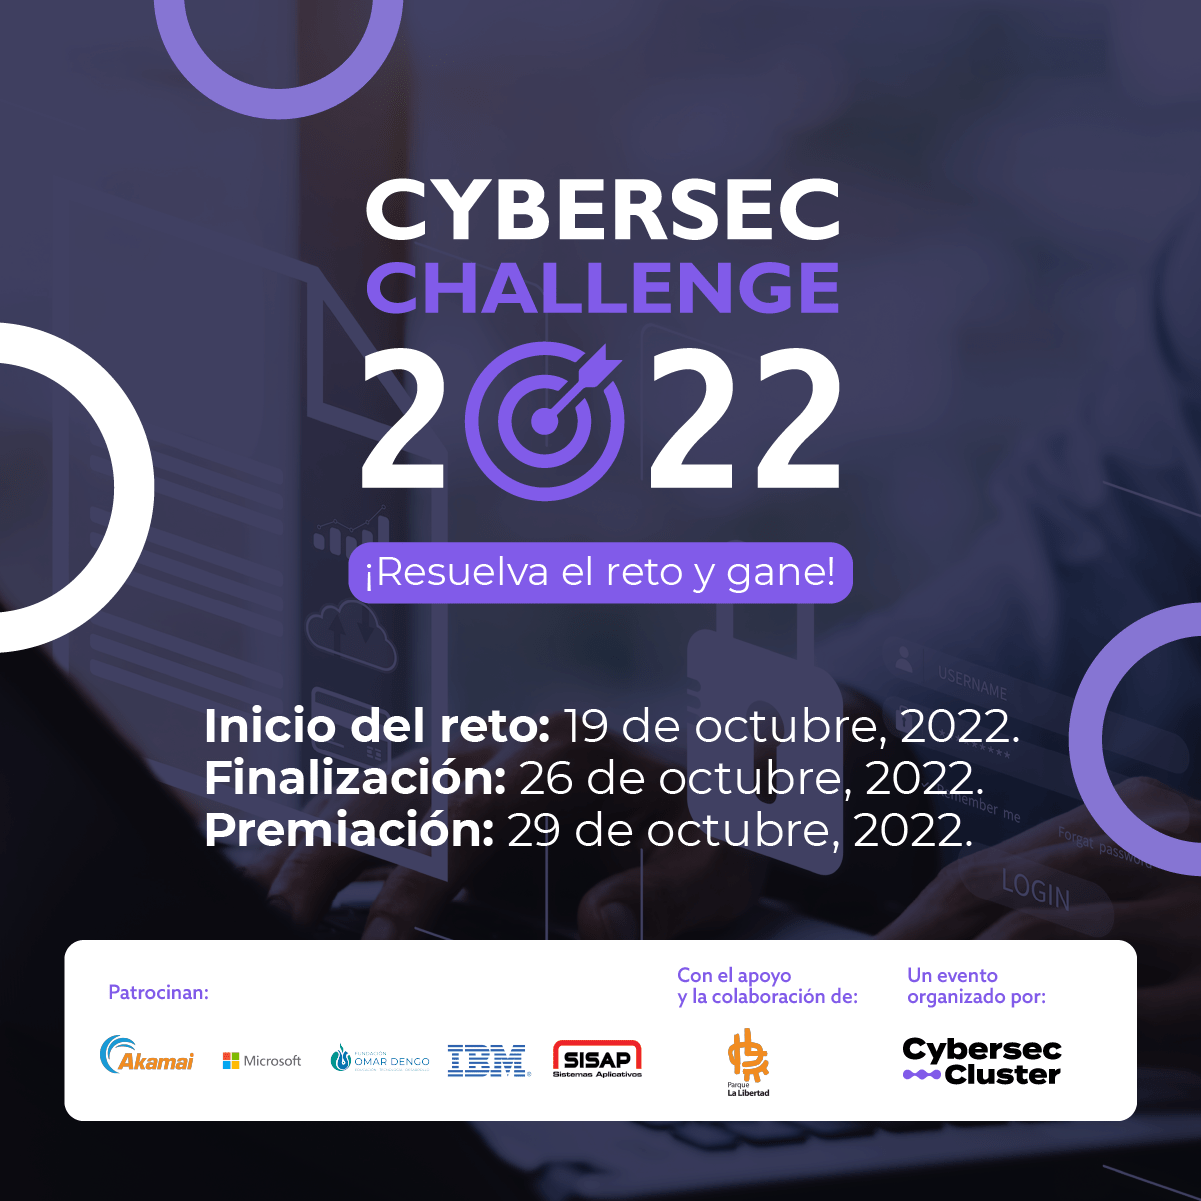 Conocimientos en Ciberseguridad de jóvenes y profesionales costarricenses serán puestos a prueba en reto virtual este 19 de octubre